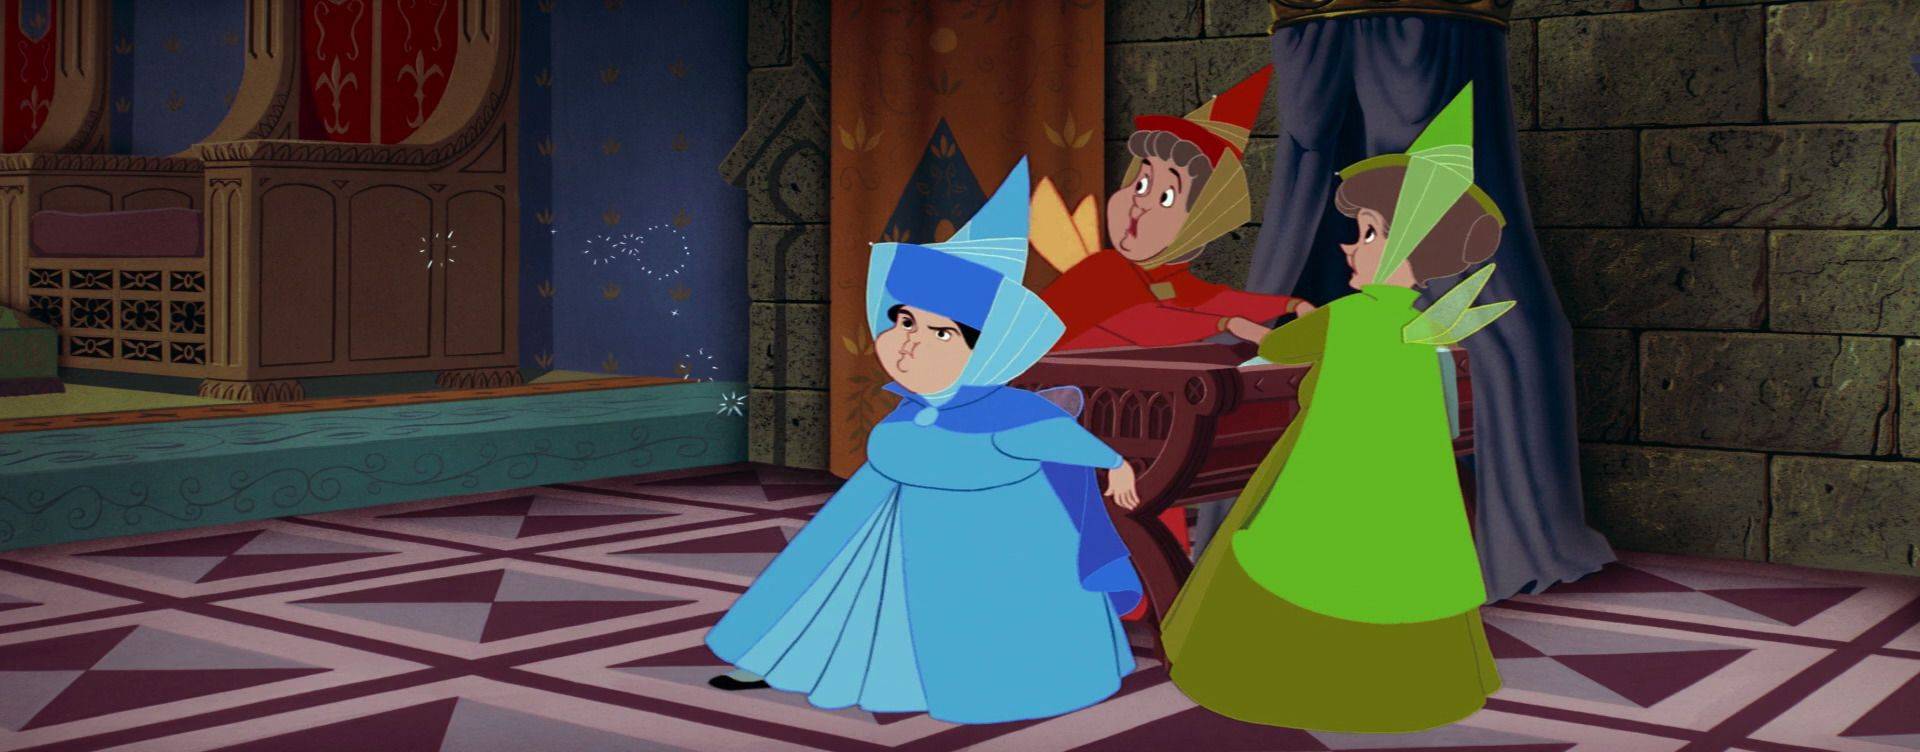 Le tre fate del cartone proteggono la piccola principessa nella culla.